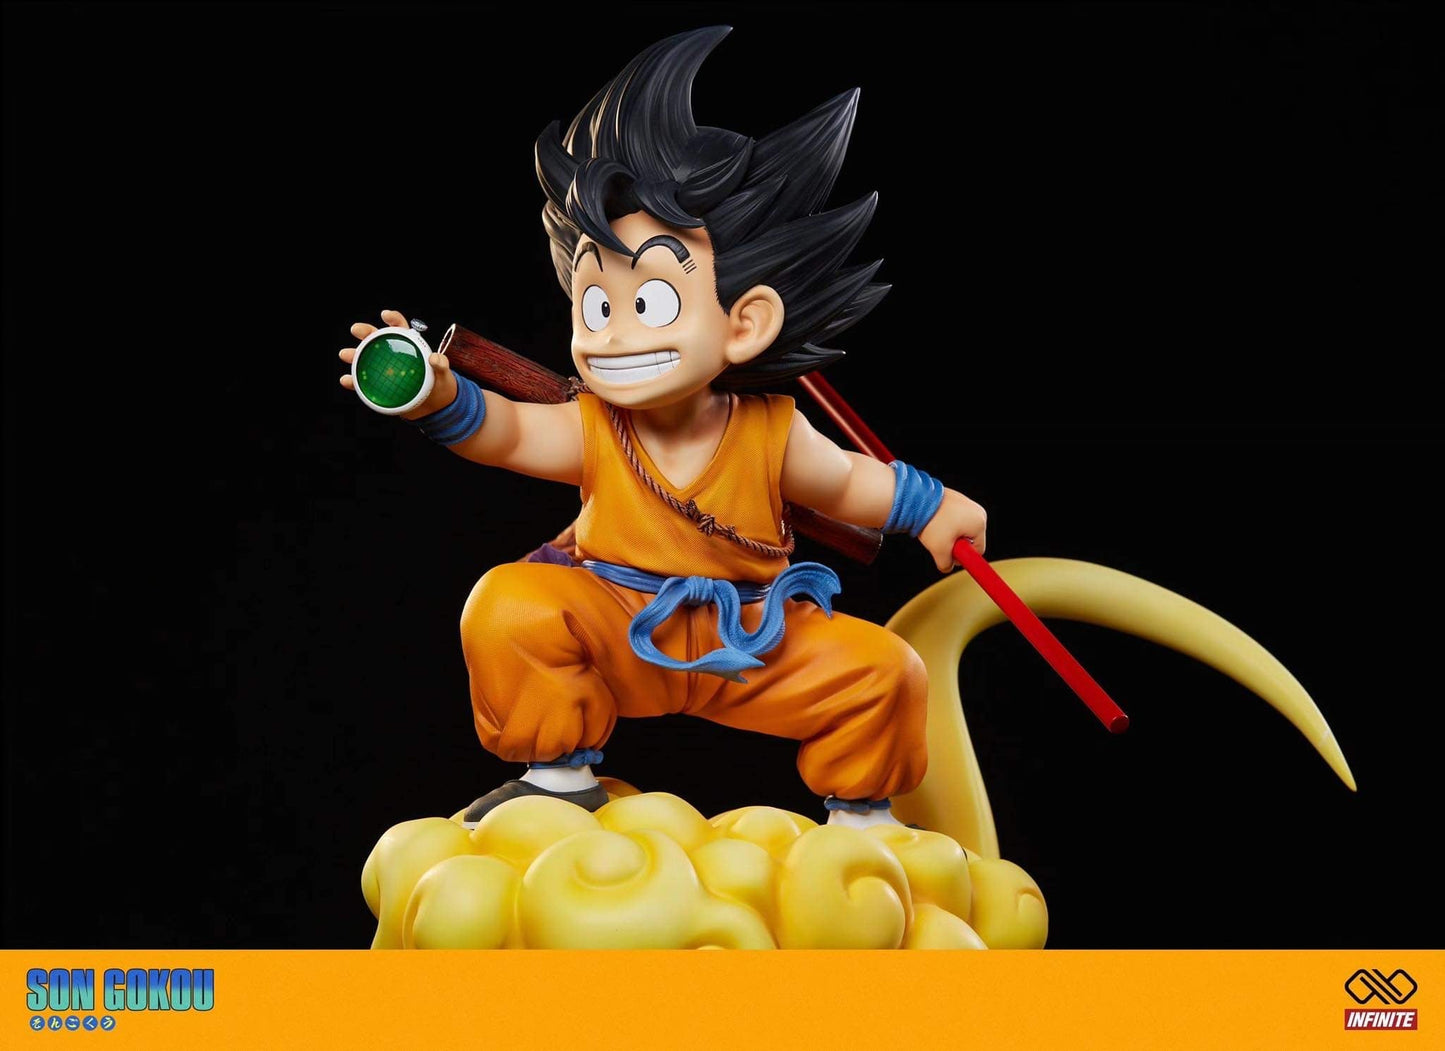 Infinite - Kid Goku StatueCorp